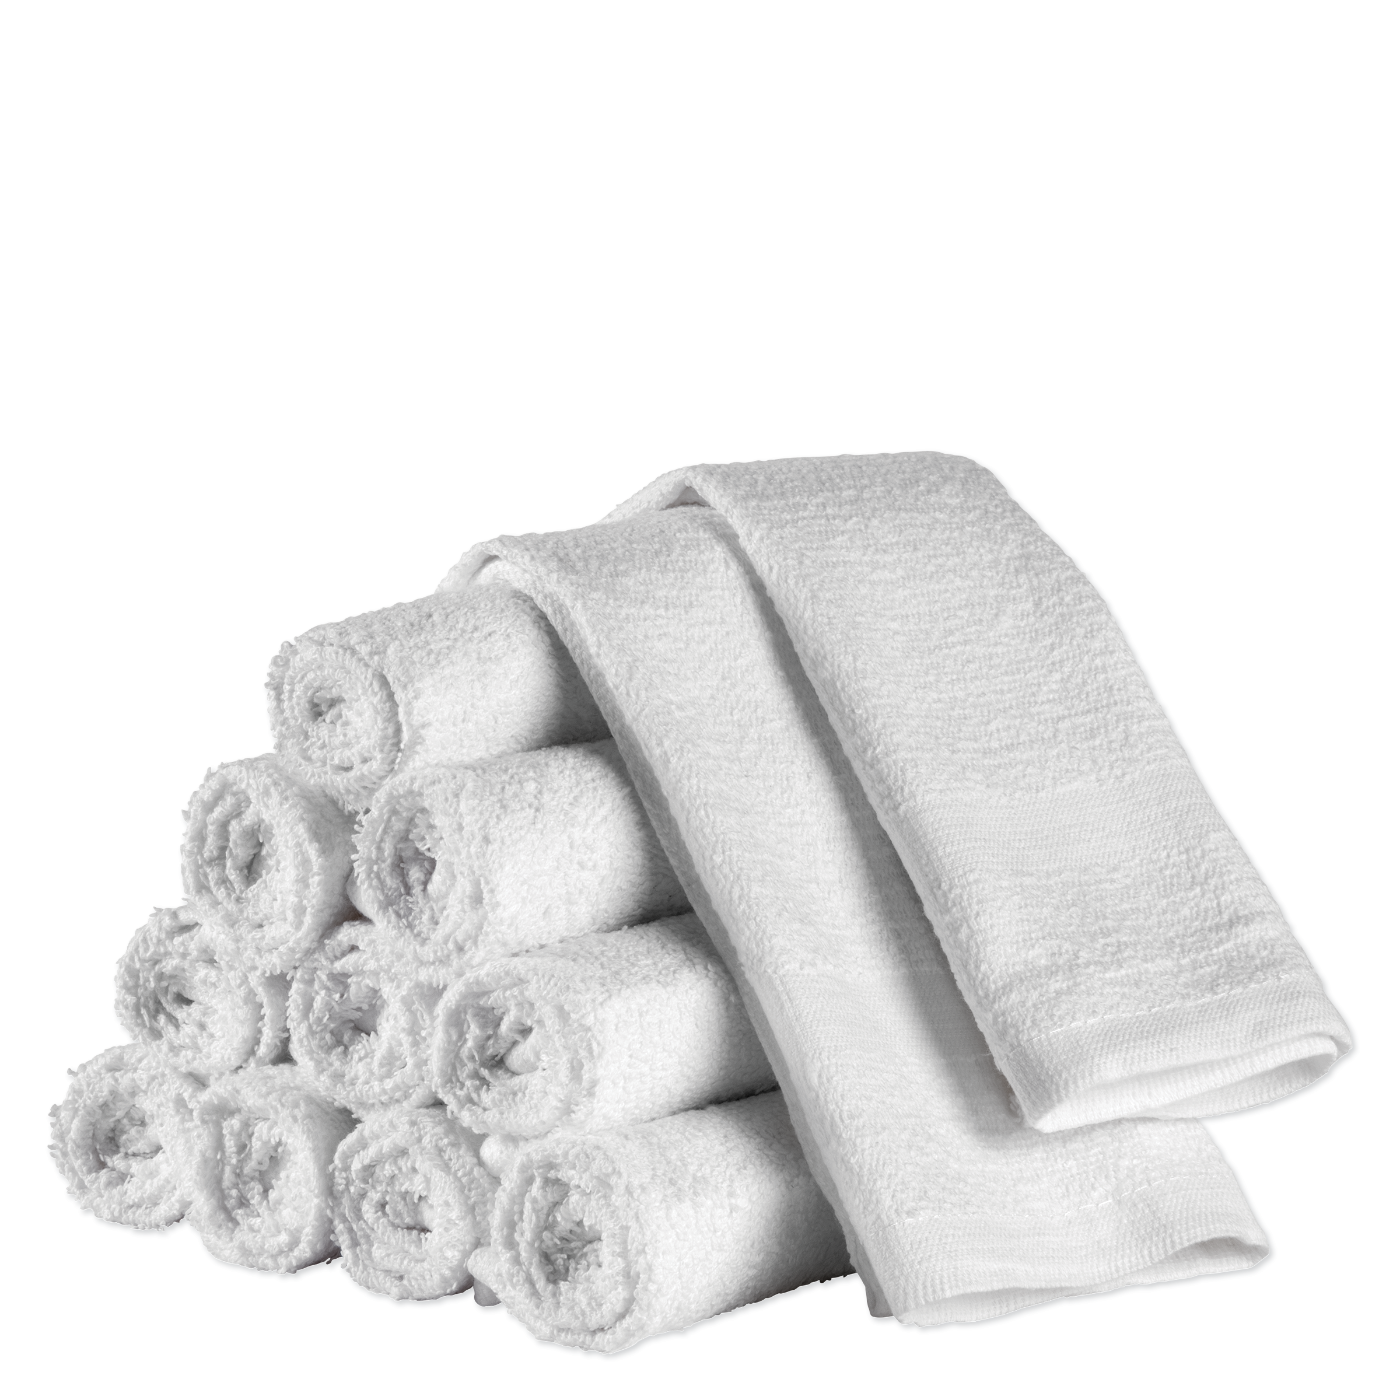 Cotton Wash Cloths, 12" x 12", 1/2 lbs. - White